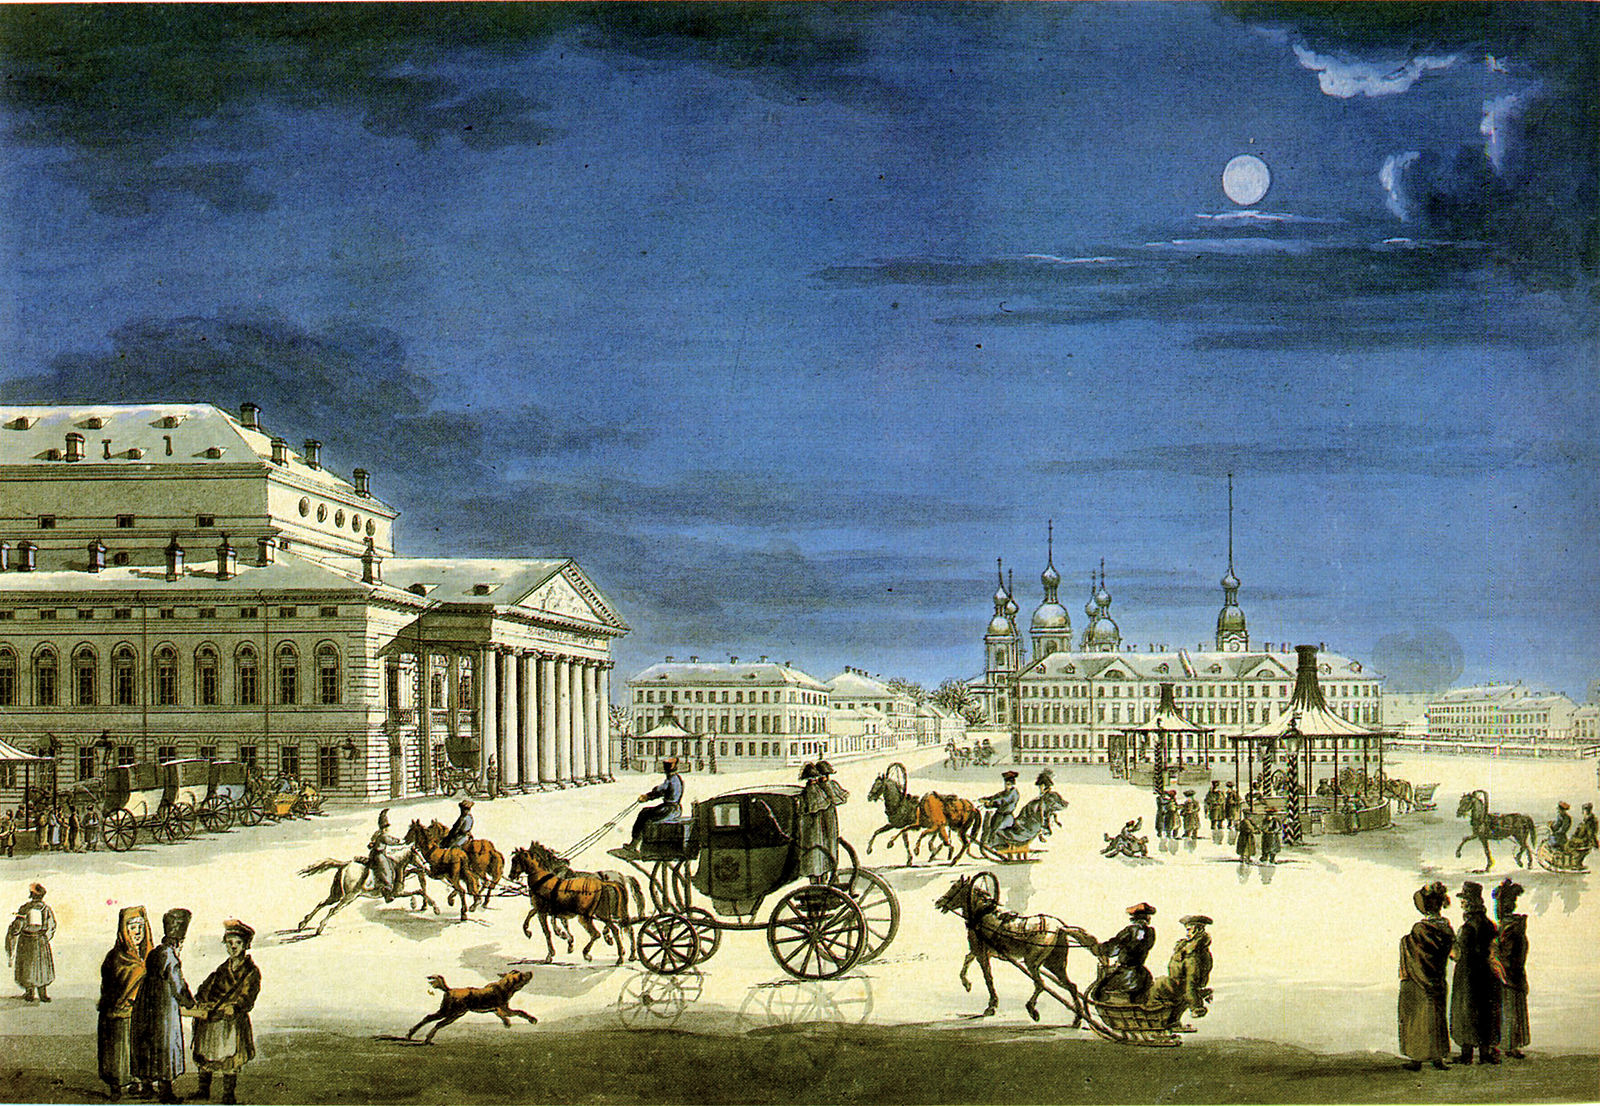 москва и петербург 19 века